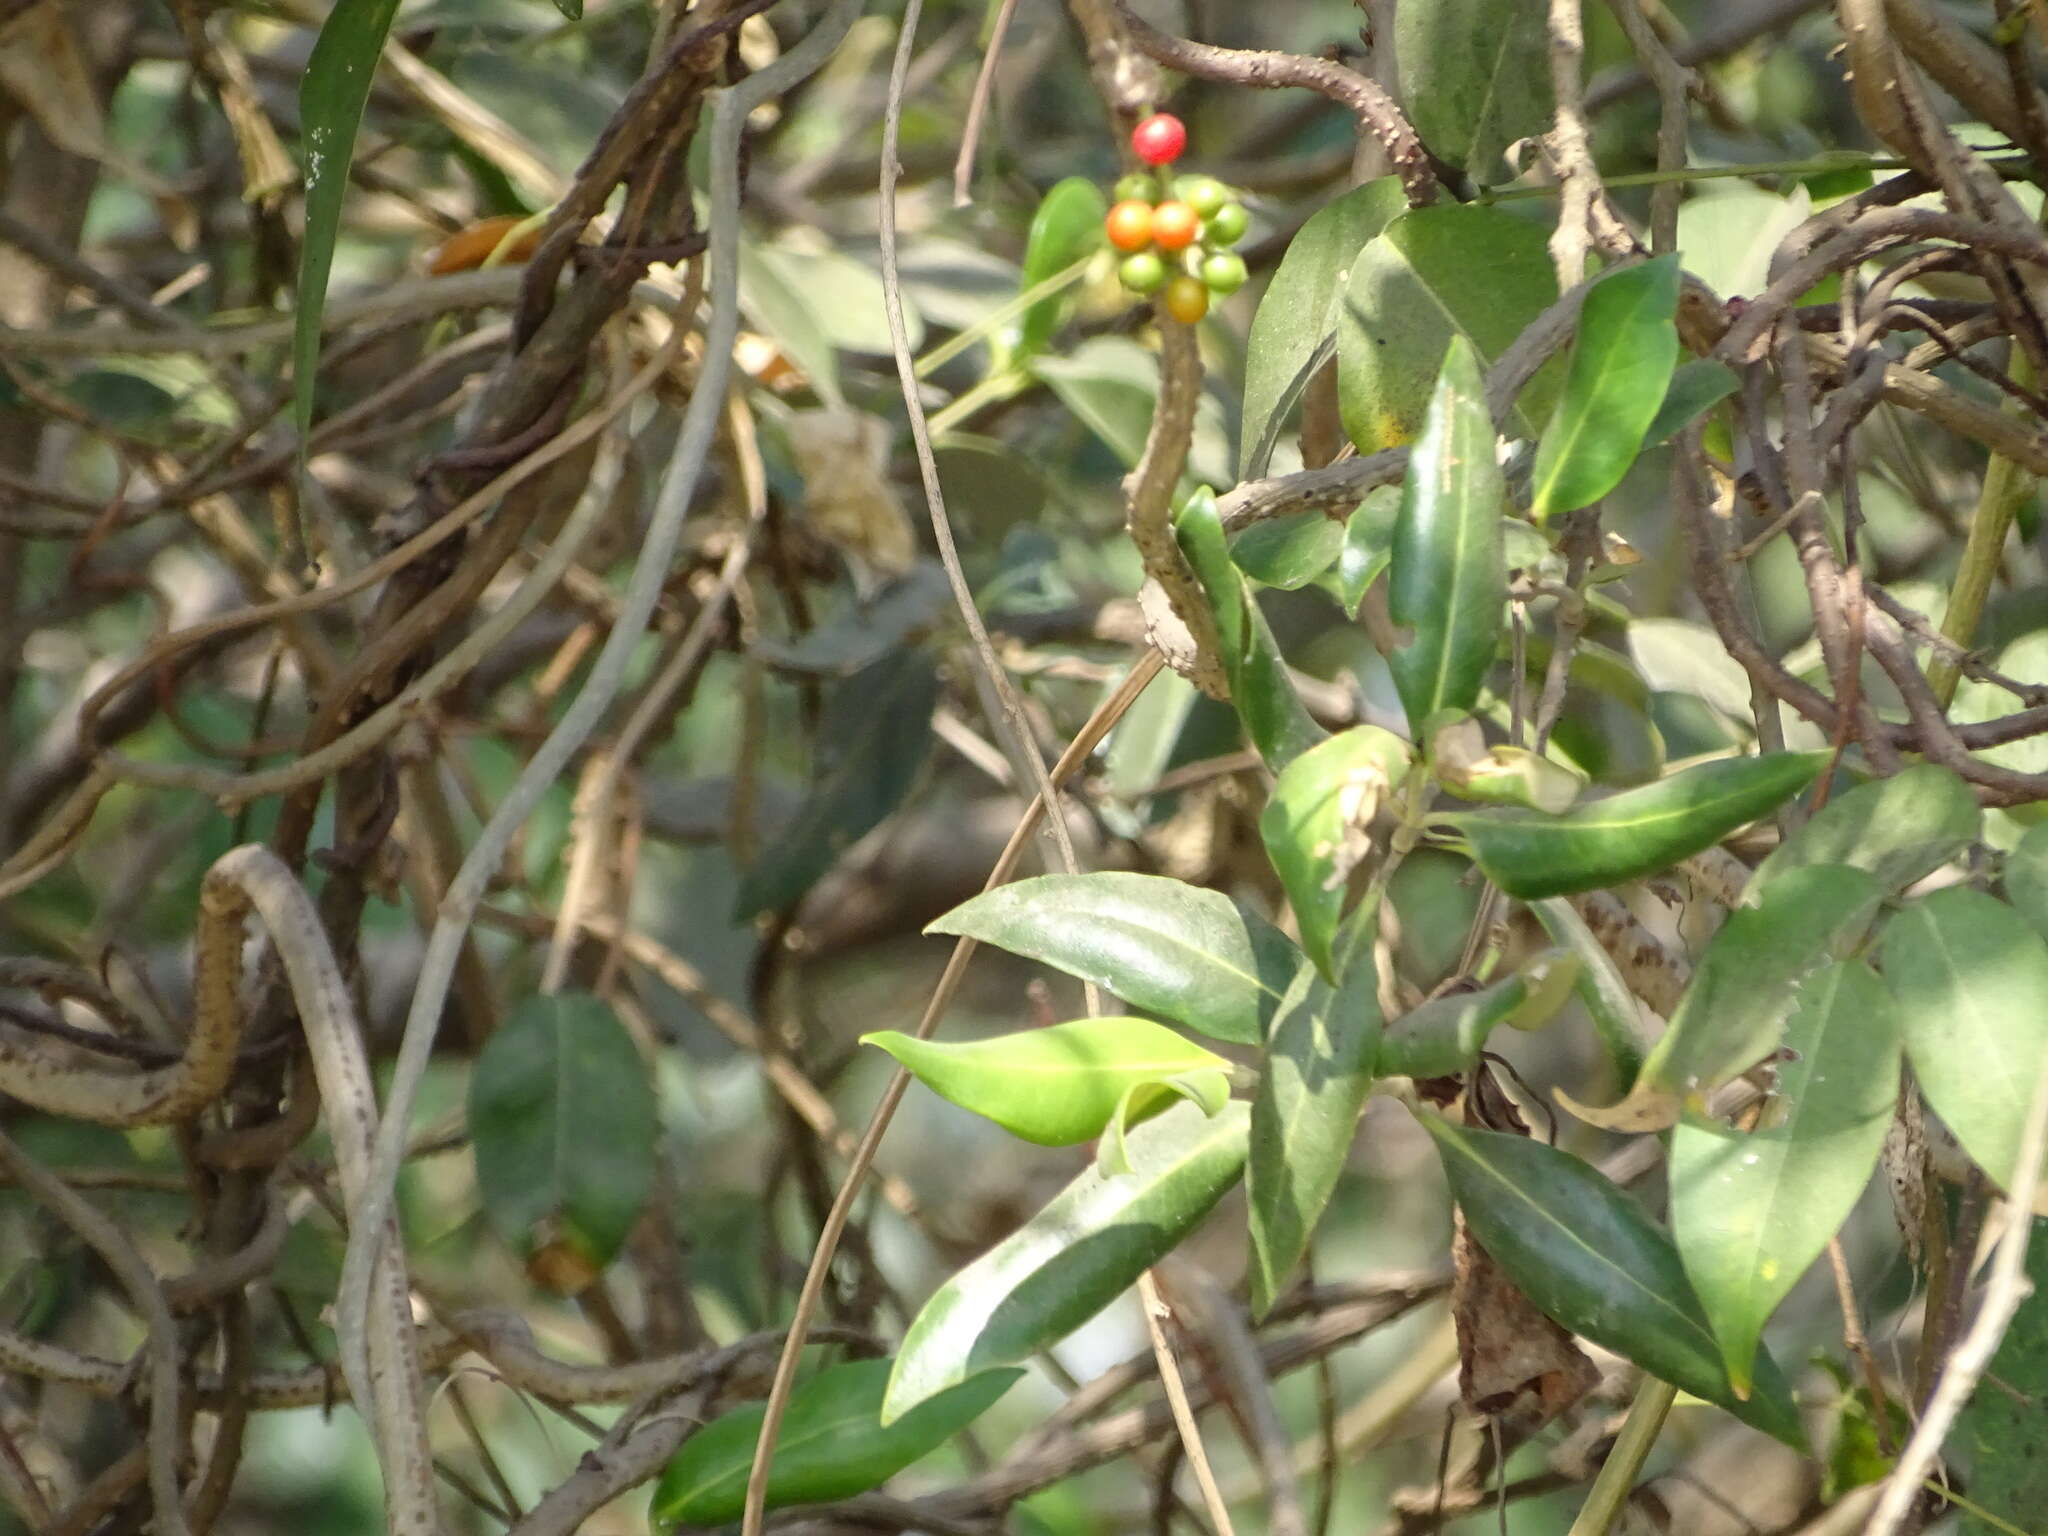 Image of Tinospora cordifolia (Willd.) Miers